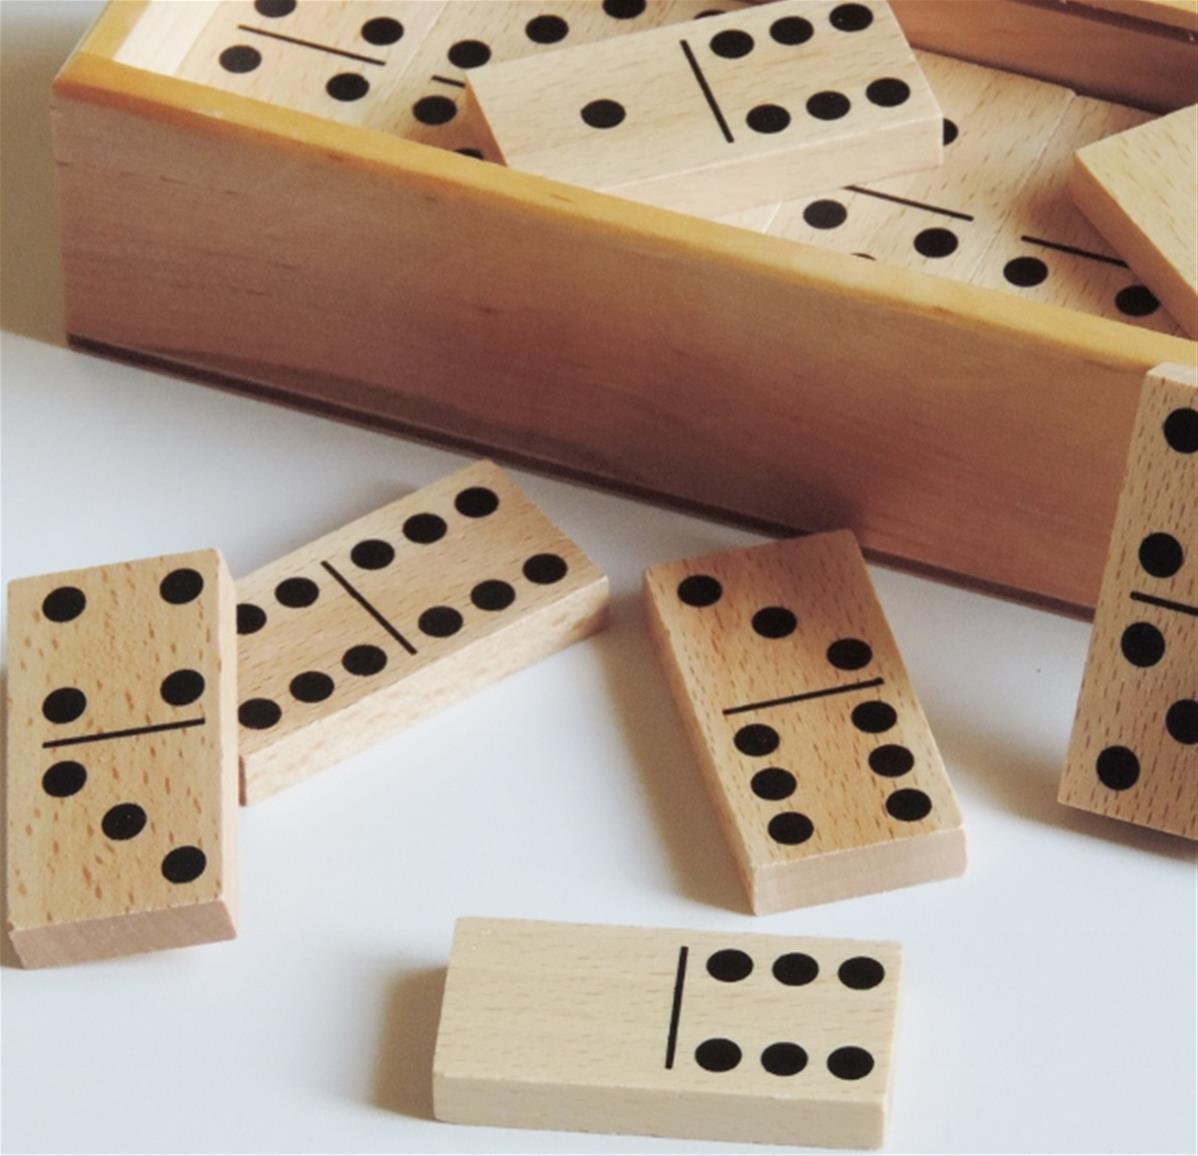 Dominos en bois - Artisan du Jura